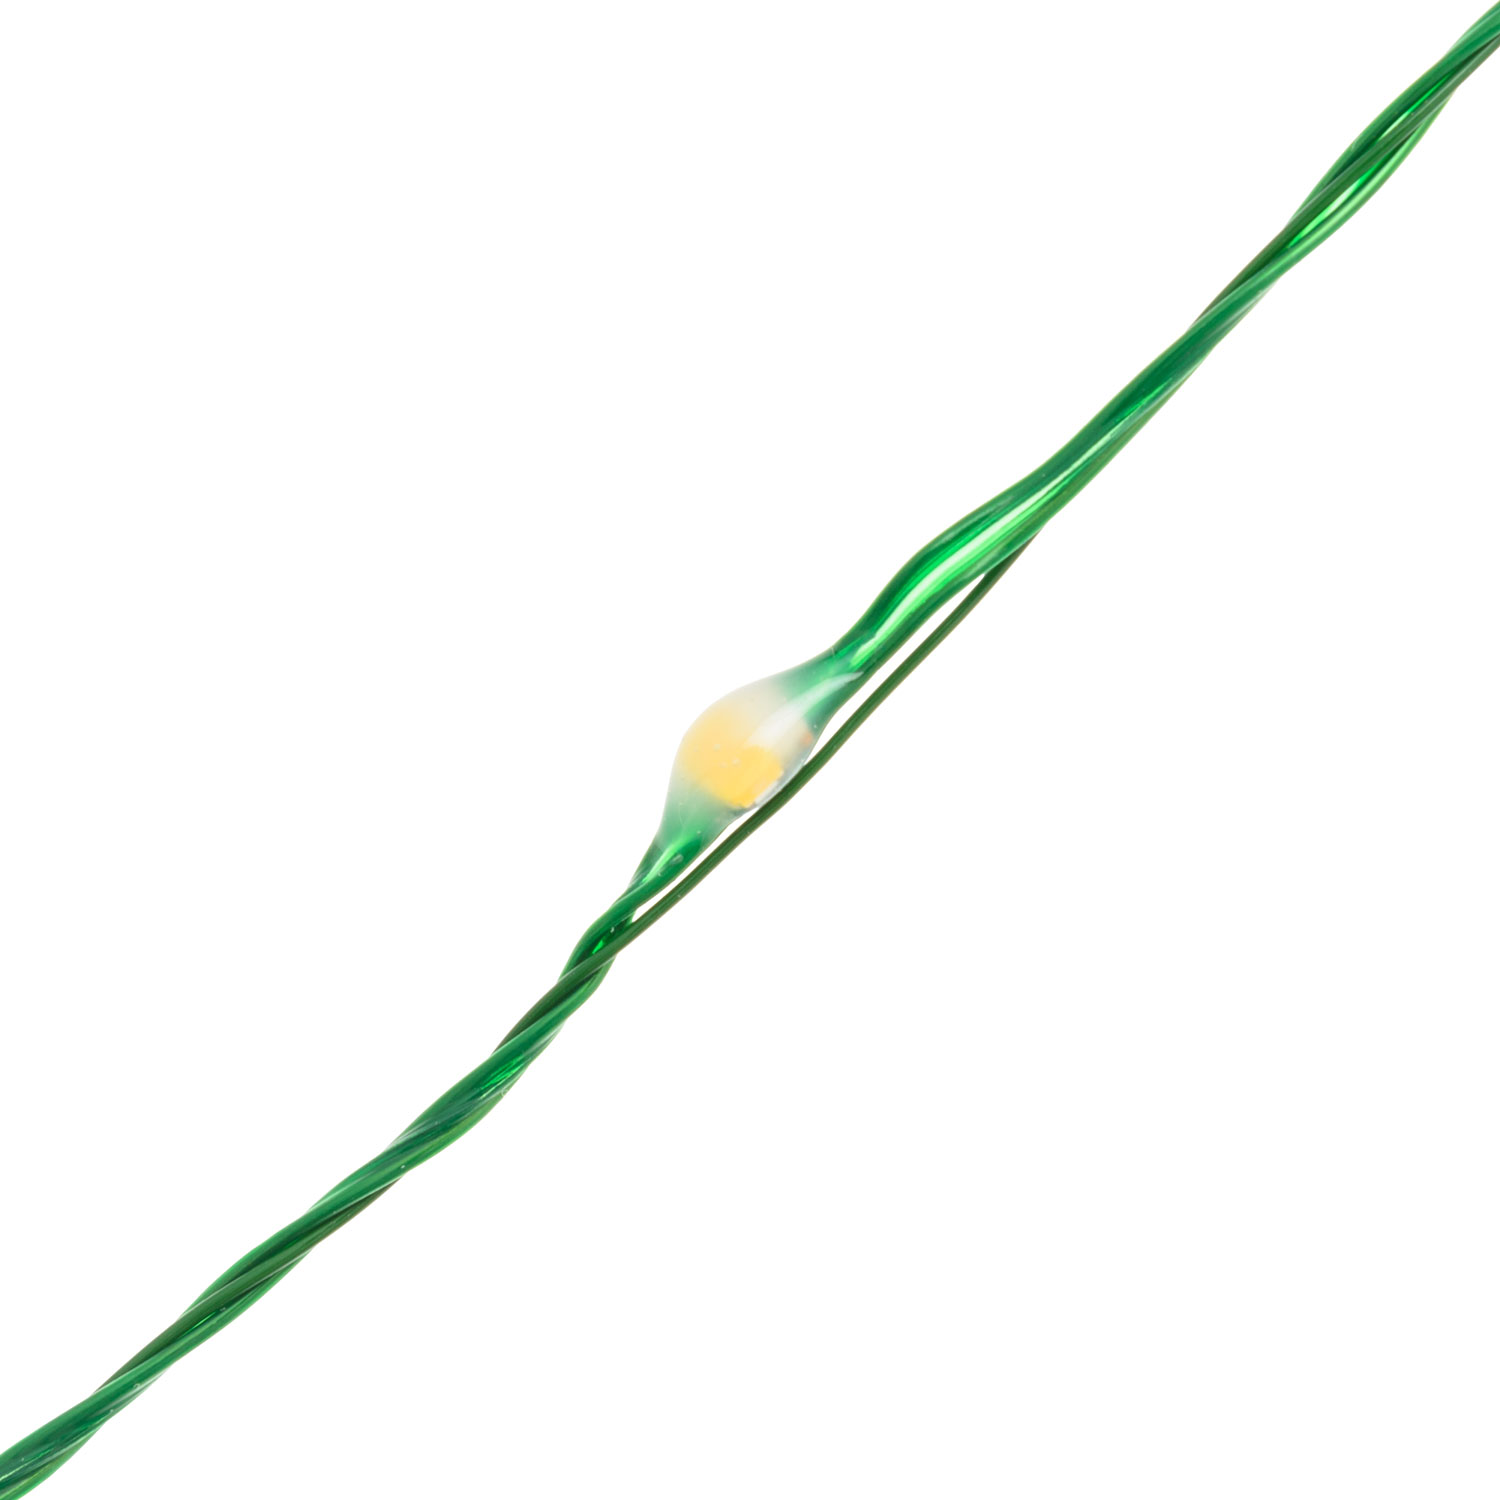 Электрогирлянда Lotti Профессионал 50 м 500 MicroLEDS зеленый кабель, цвет теплый белый - фото 4